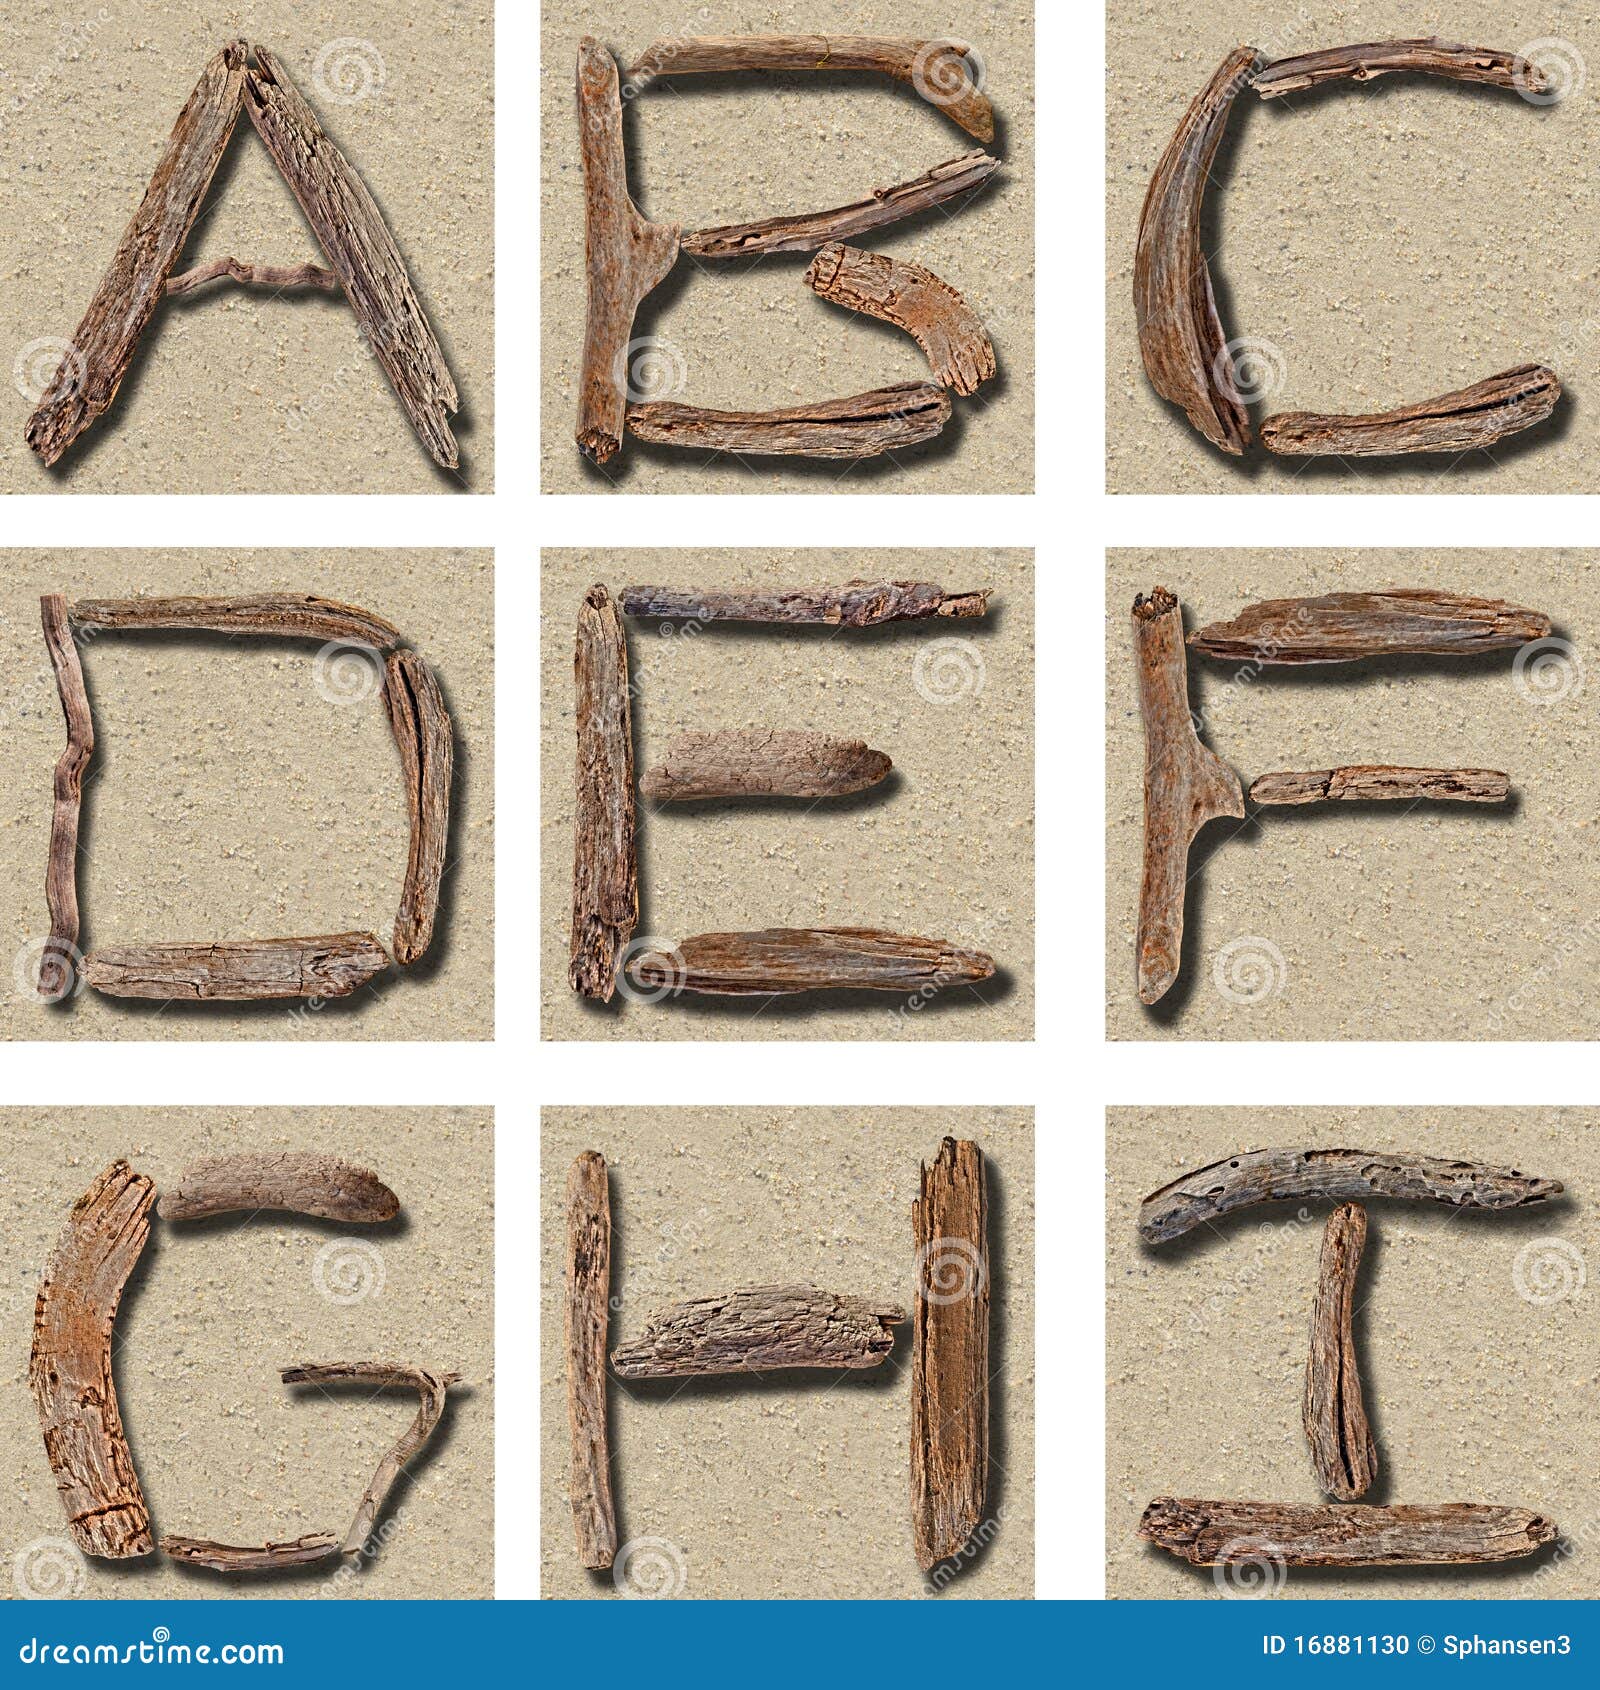 seamless tiling driftwood alphabet a - i